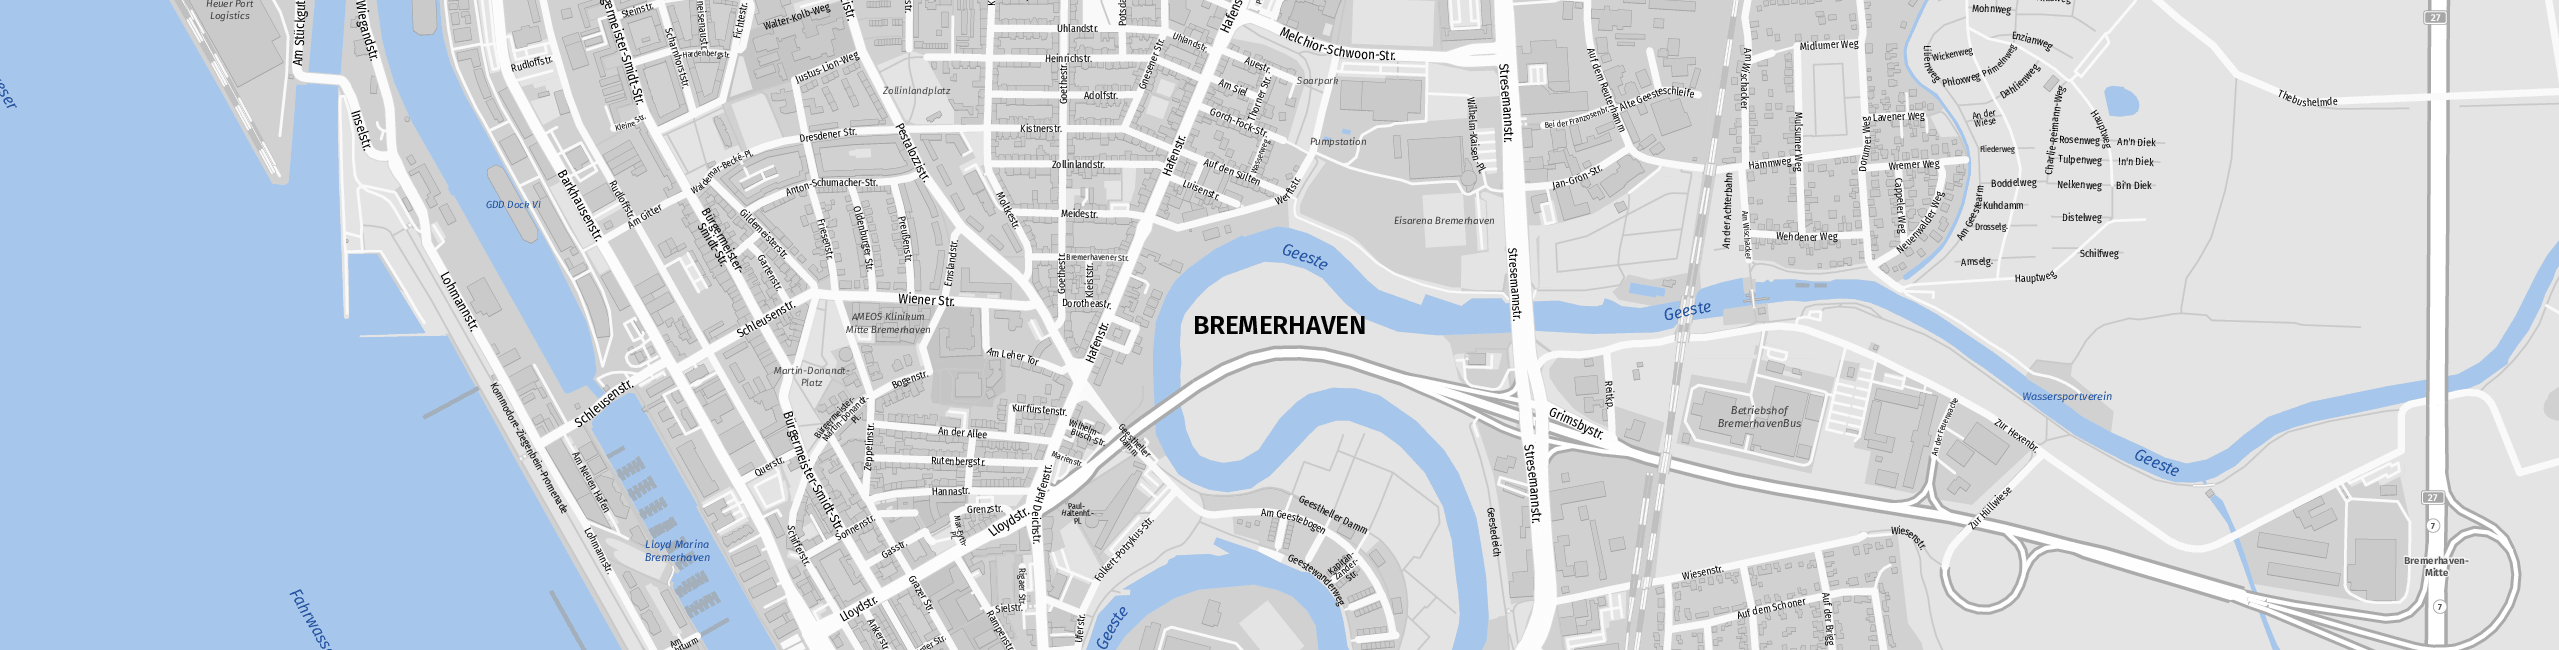 Stadtplan Bremerhaven zum Downloaden.